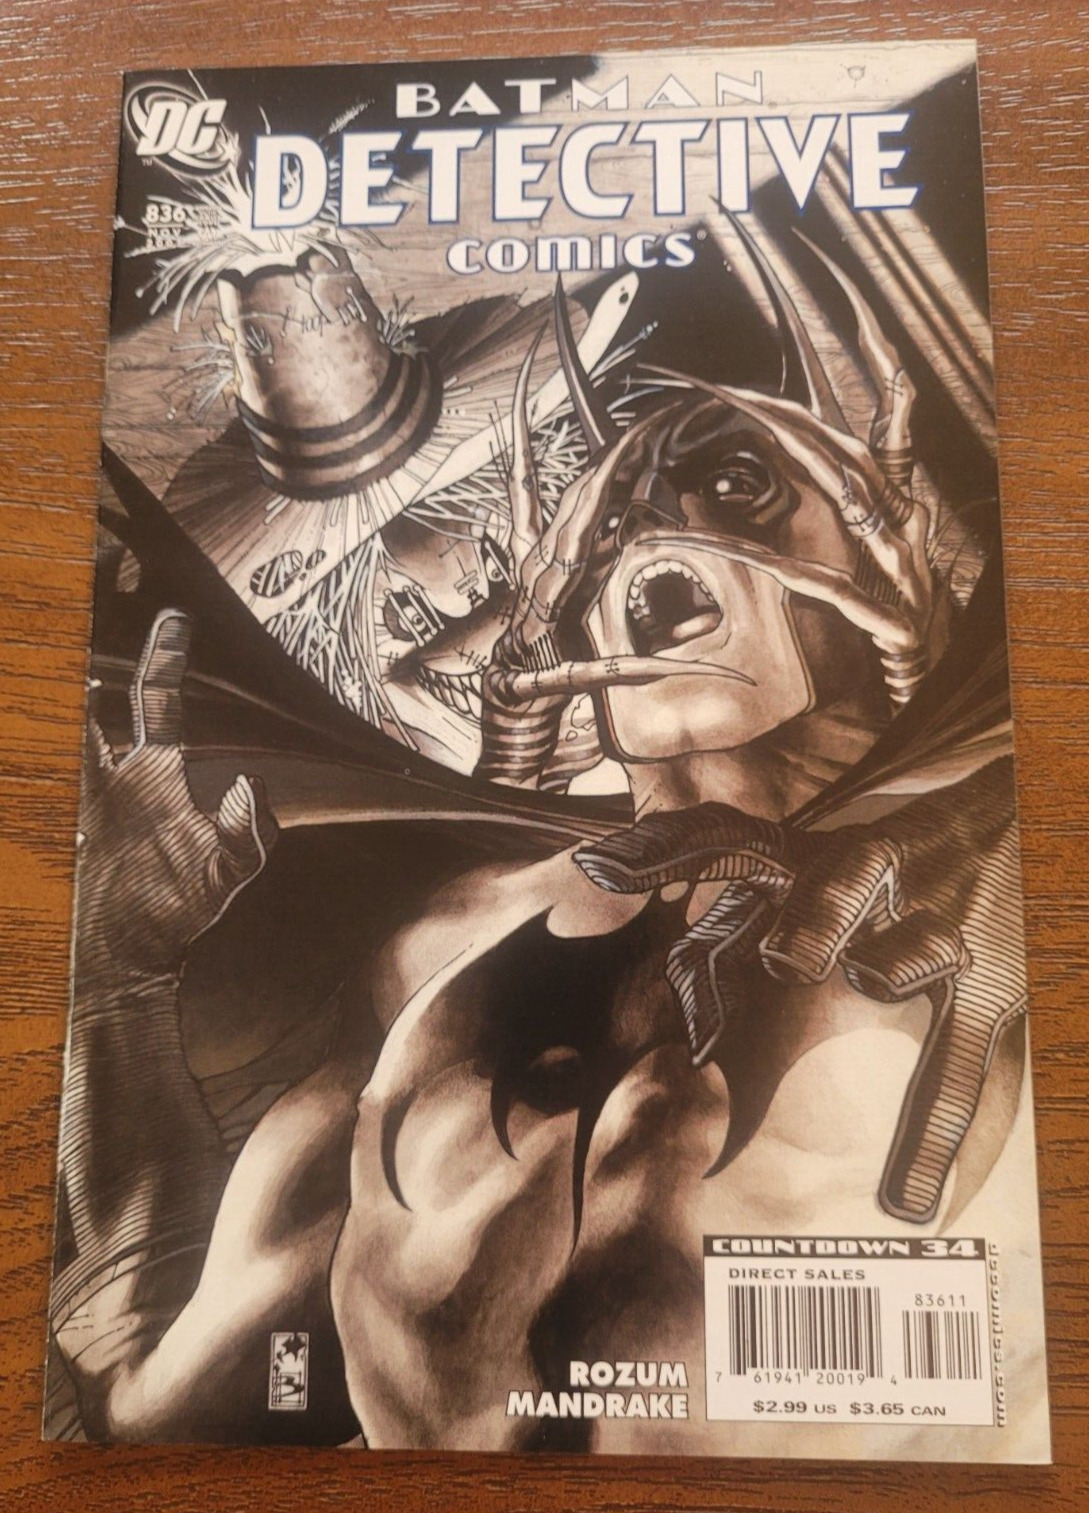 Batman: Detective Comics #836 - Absolute Terror Part 2 of 2 - November 2007